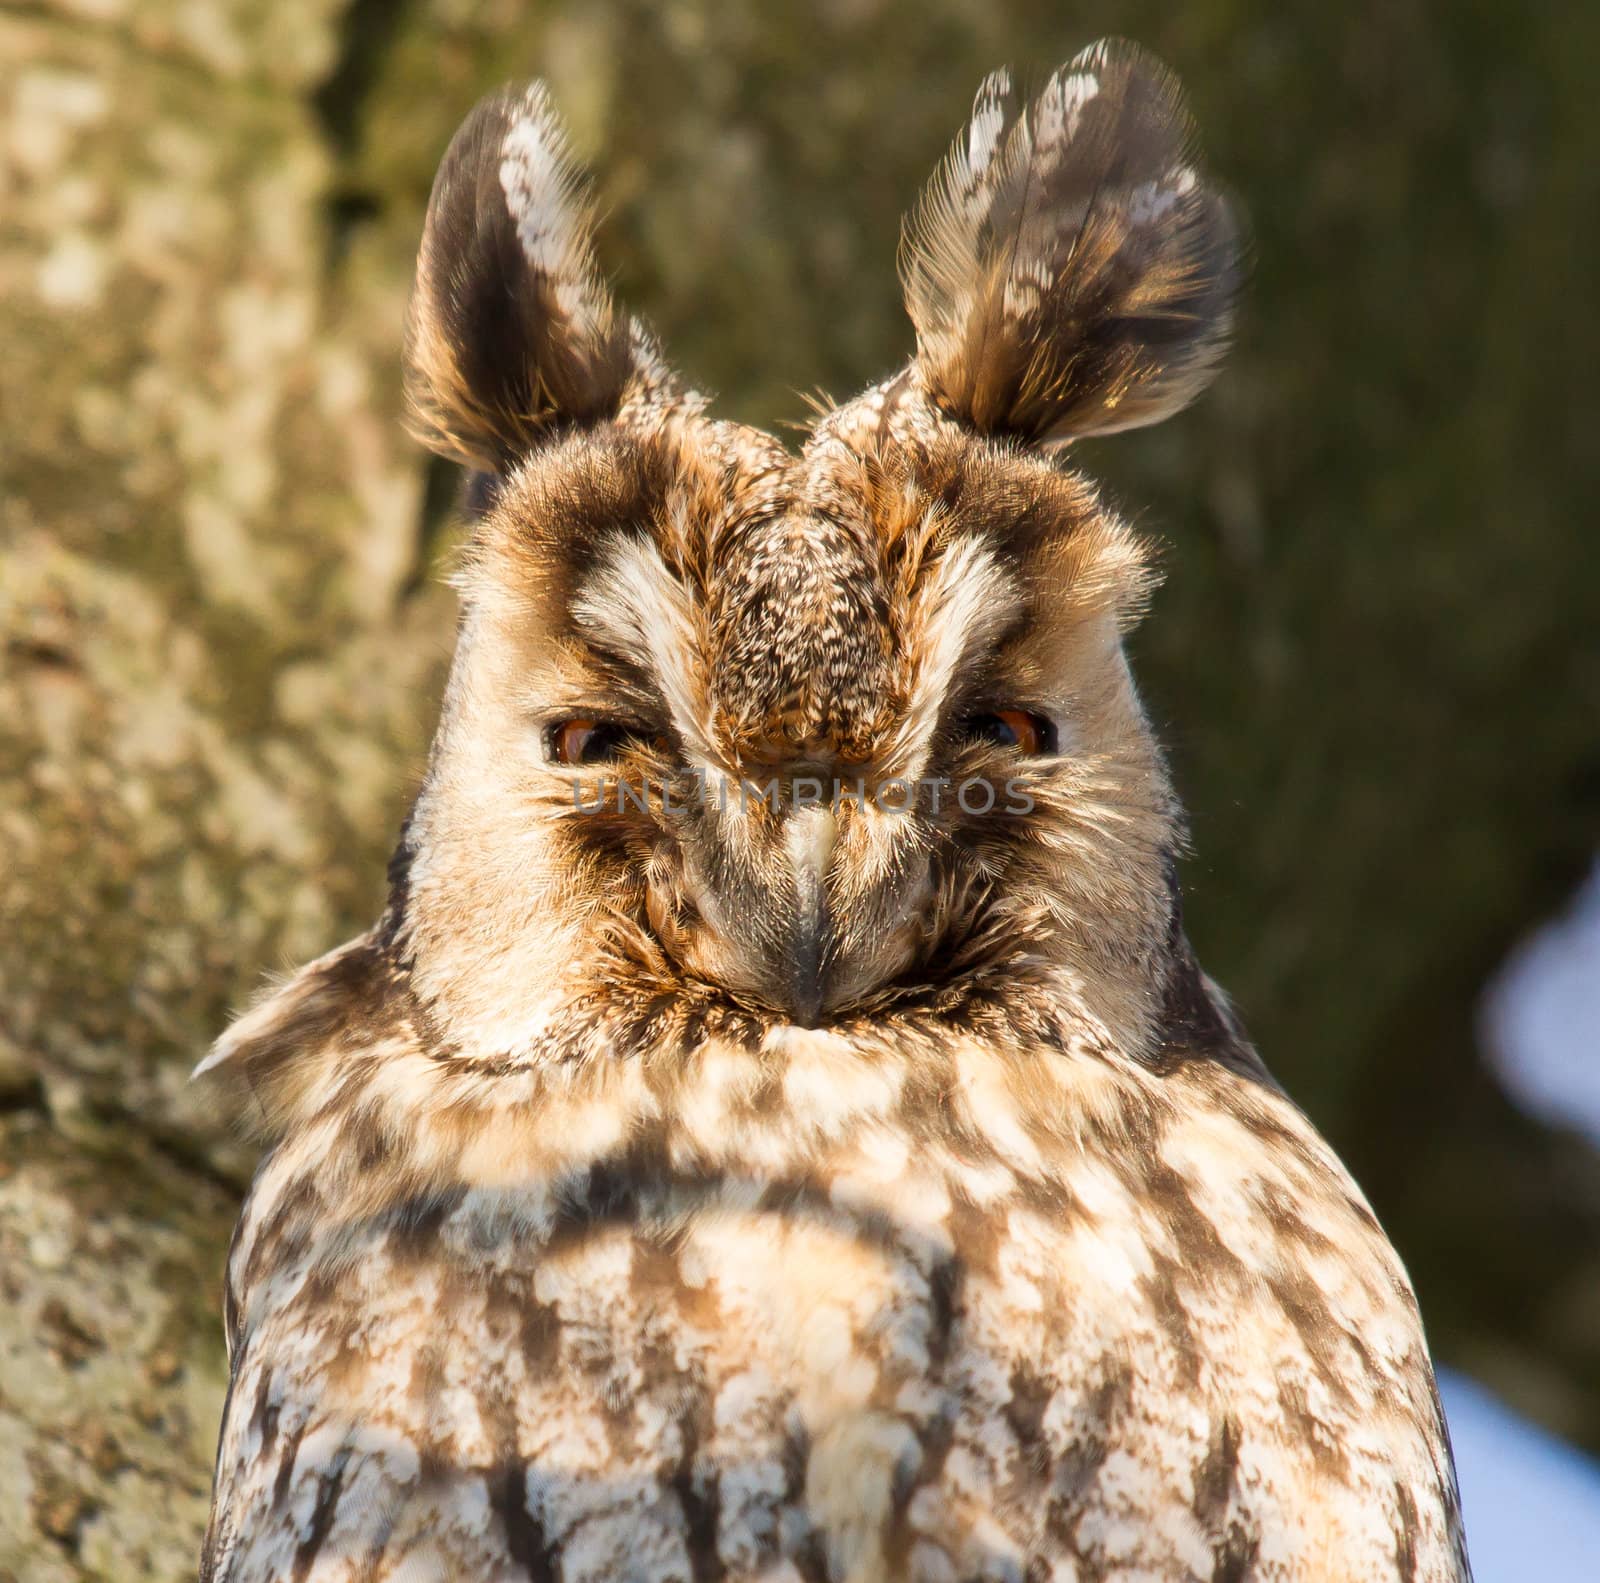 A sleeping long-eared owl in a tree